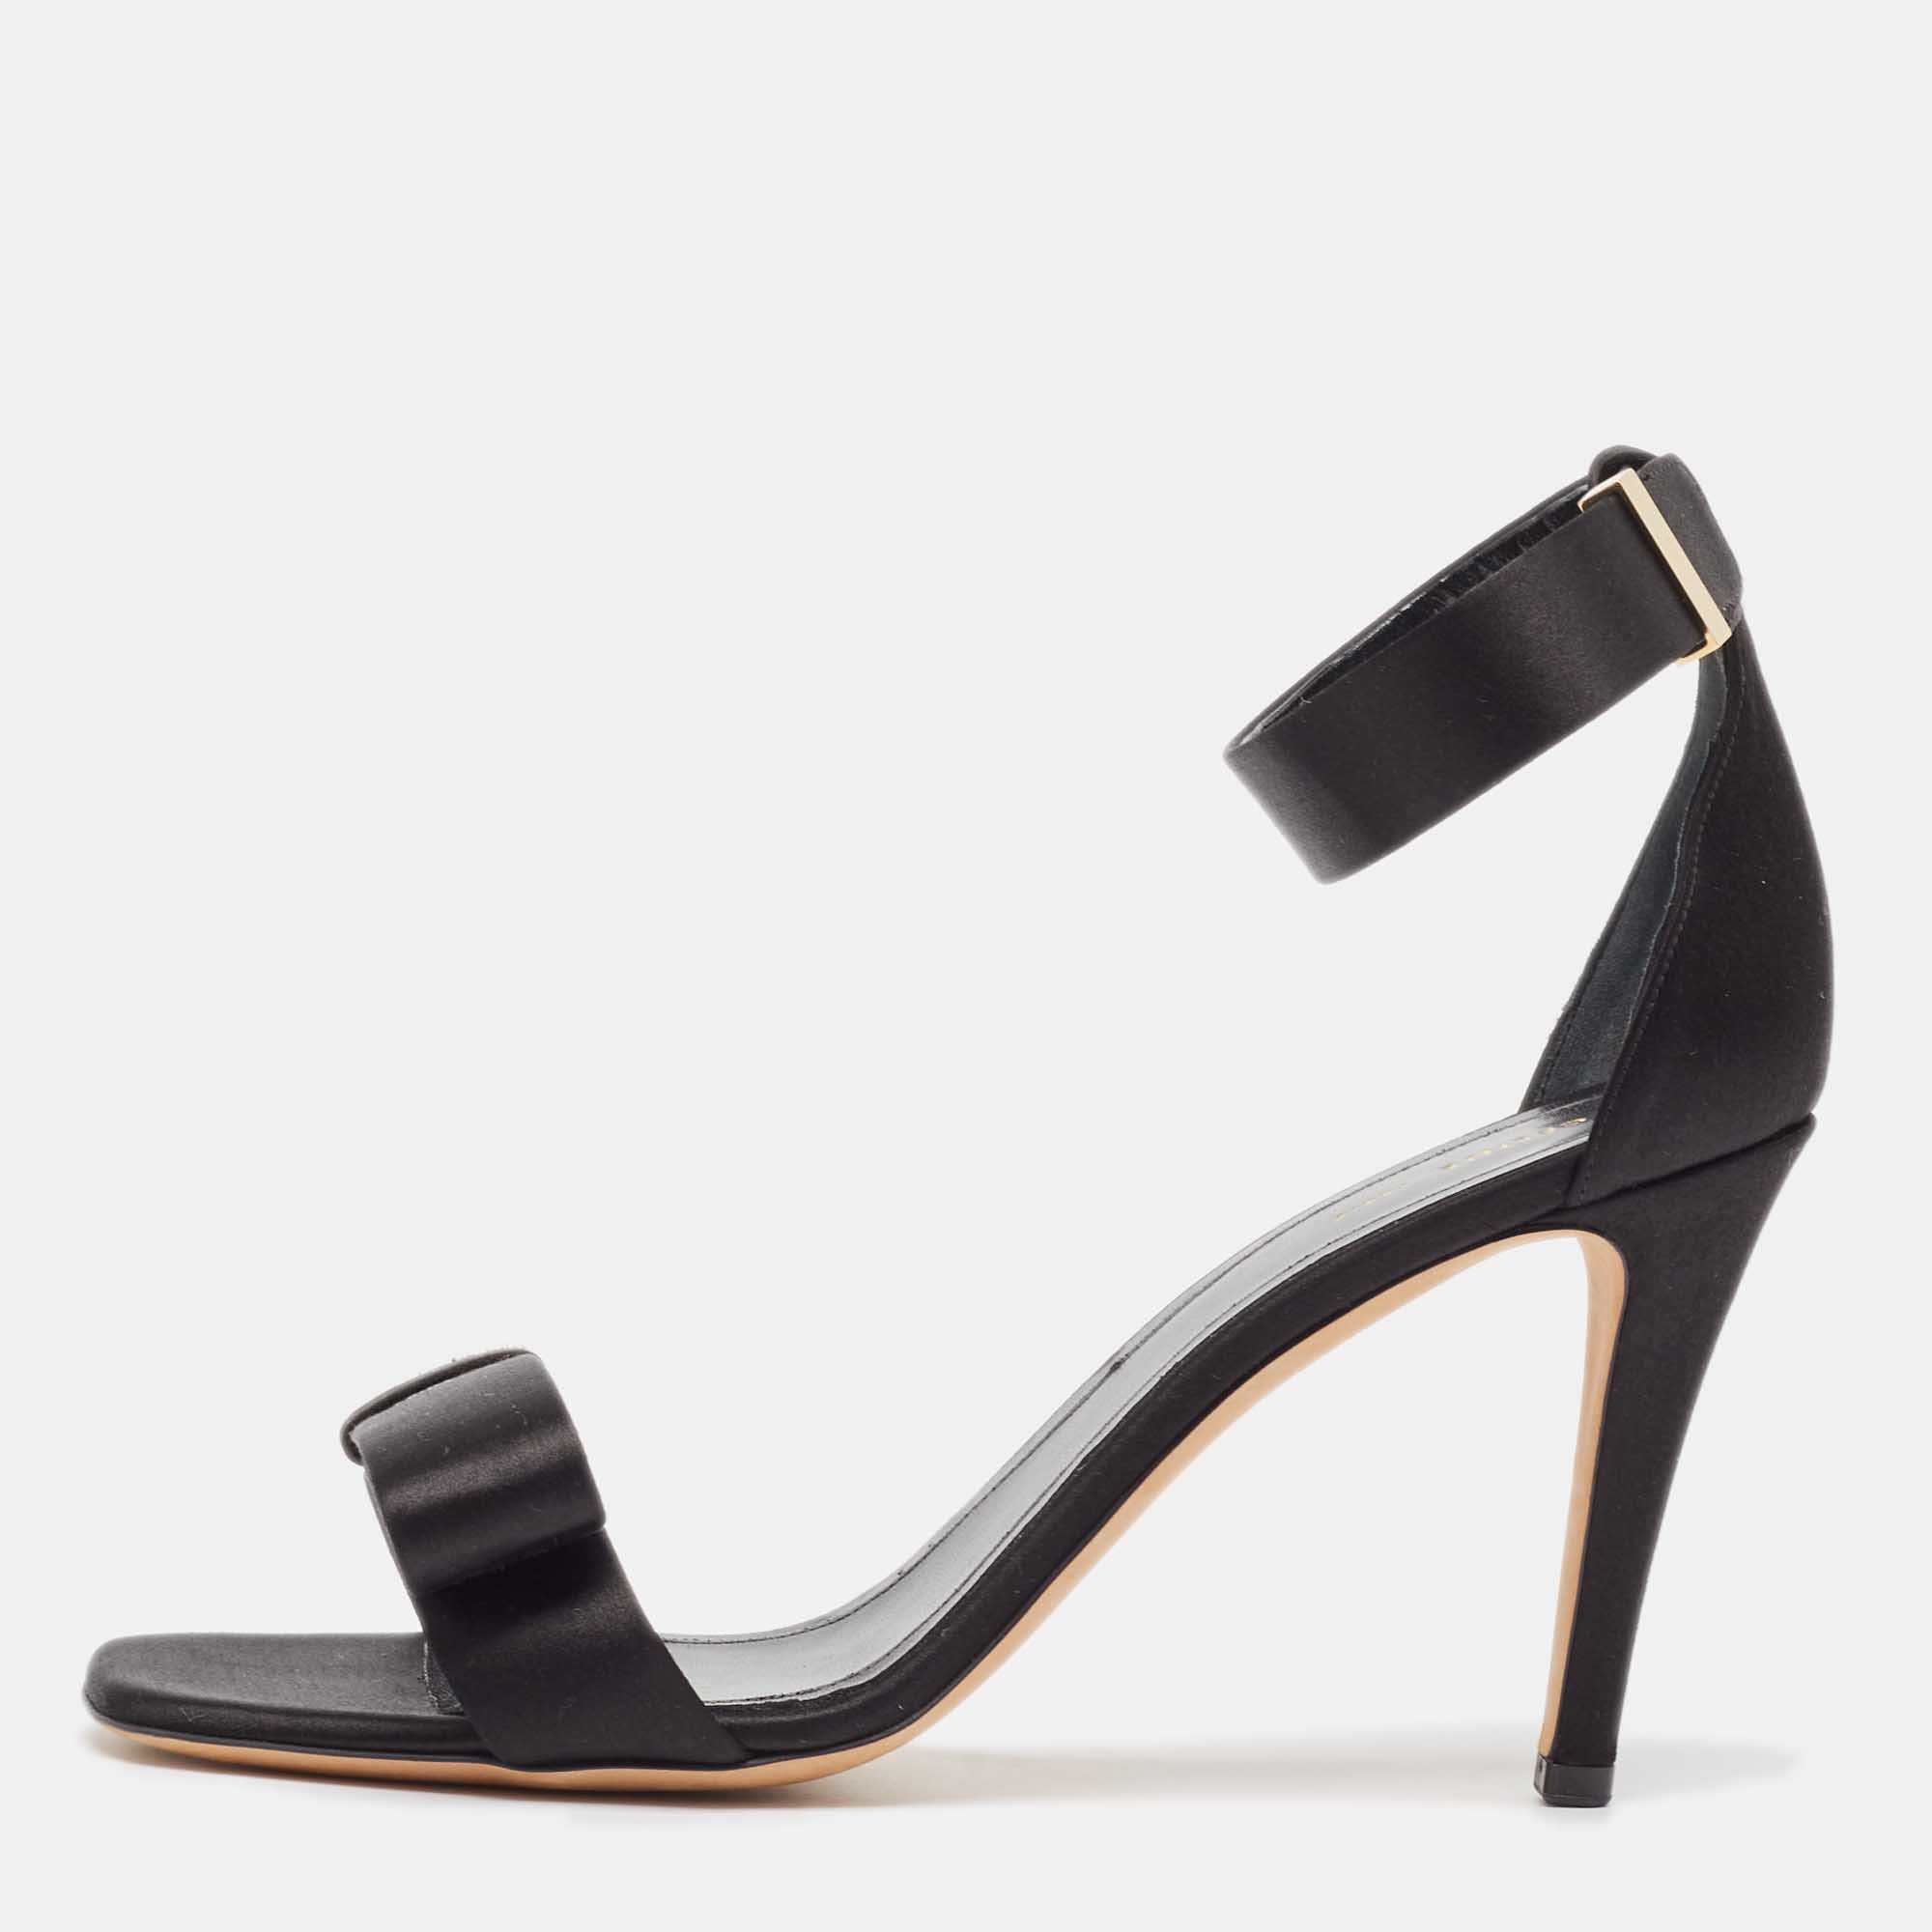 Celine black suede ankle strap sandals size 39